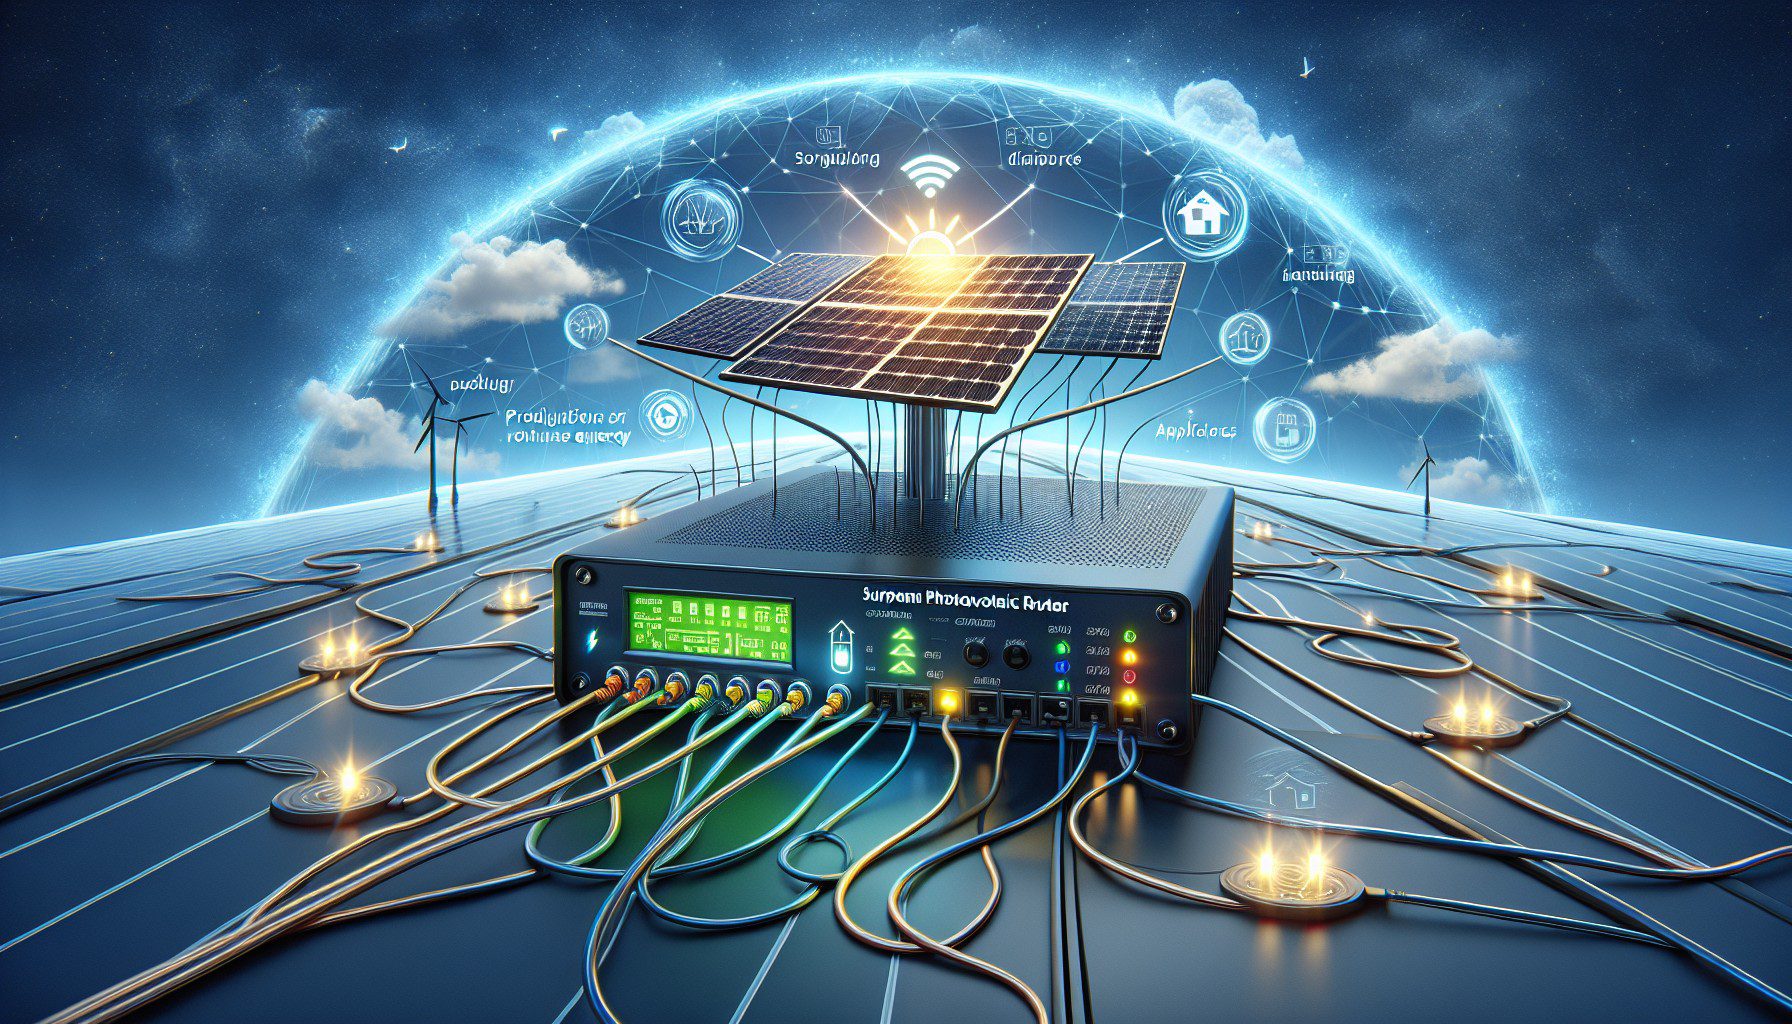 gerez lenergie avec un routeur surplus photovoltaique